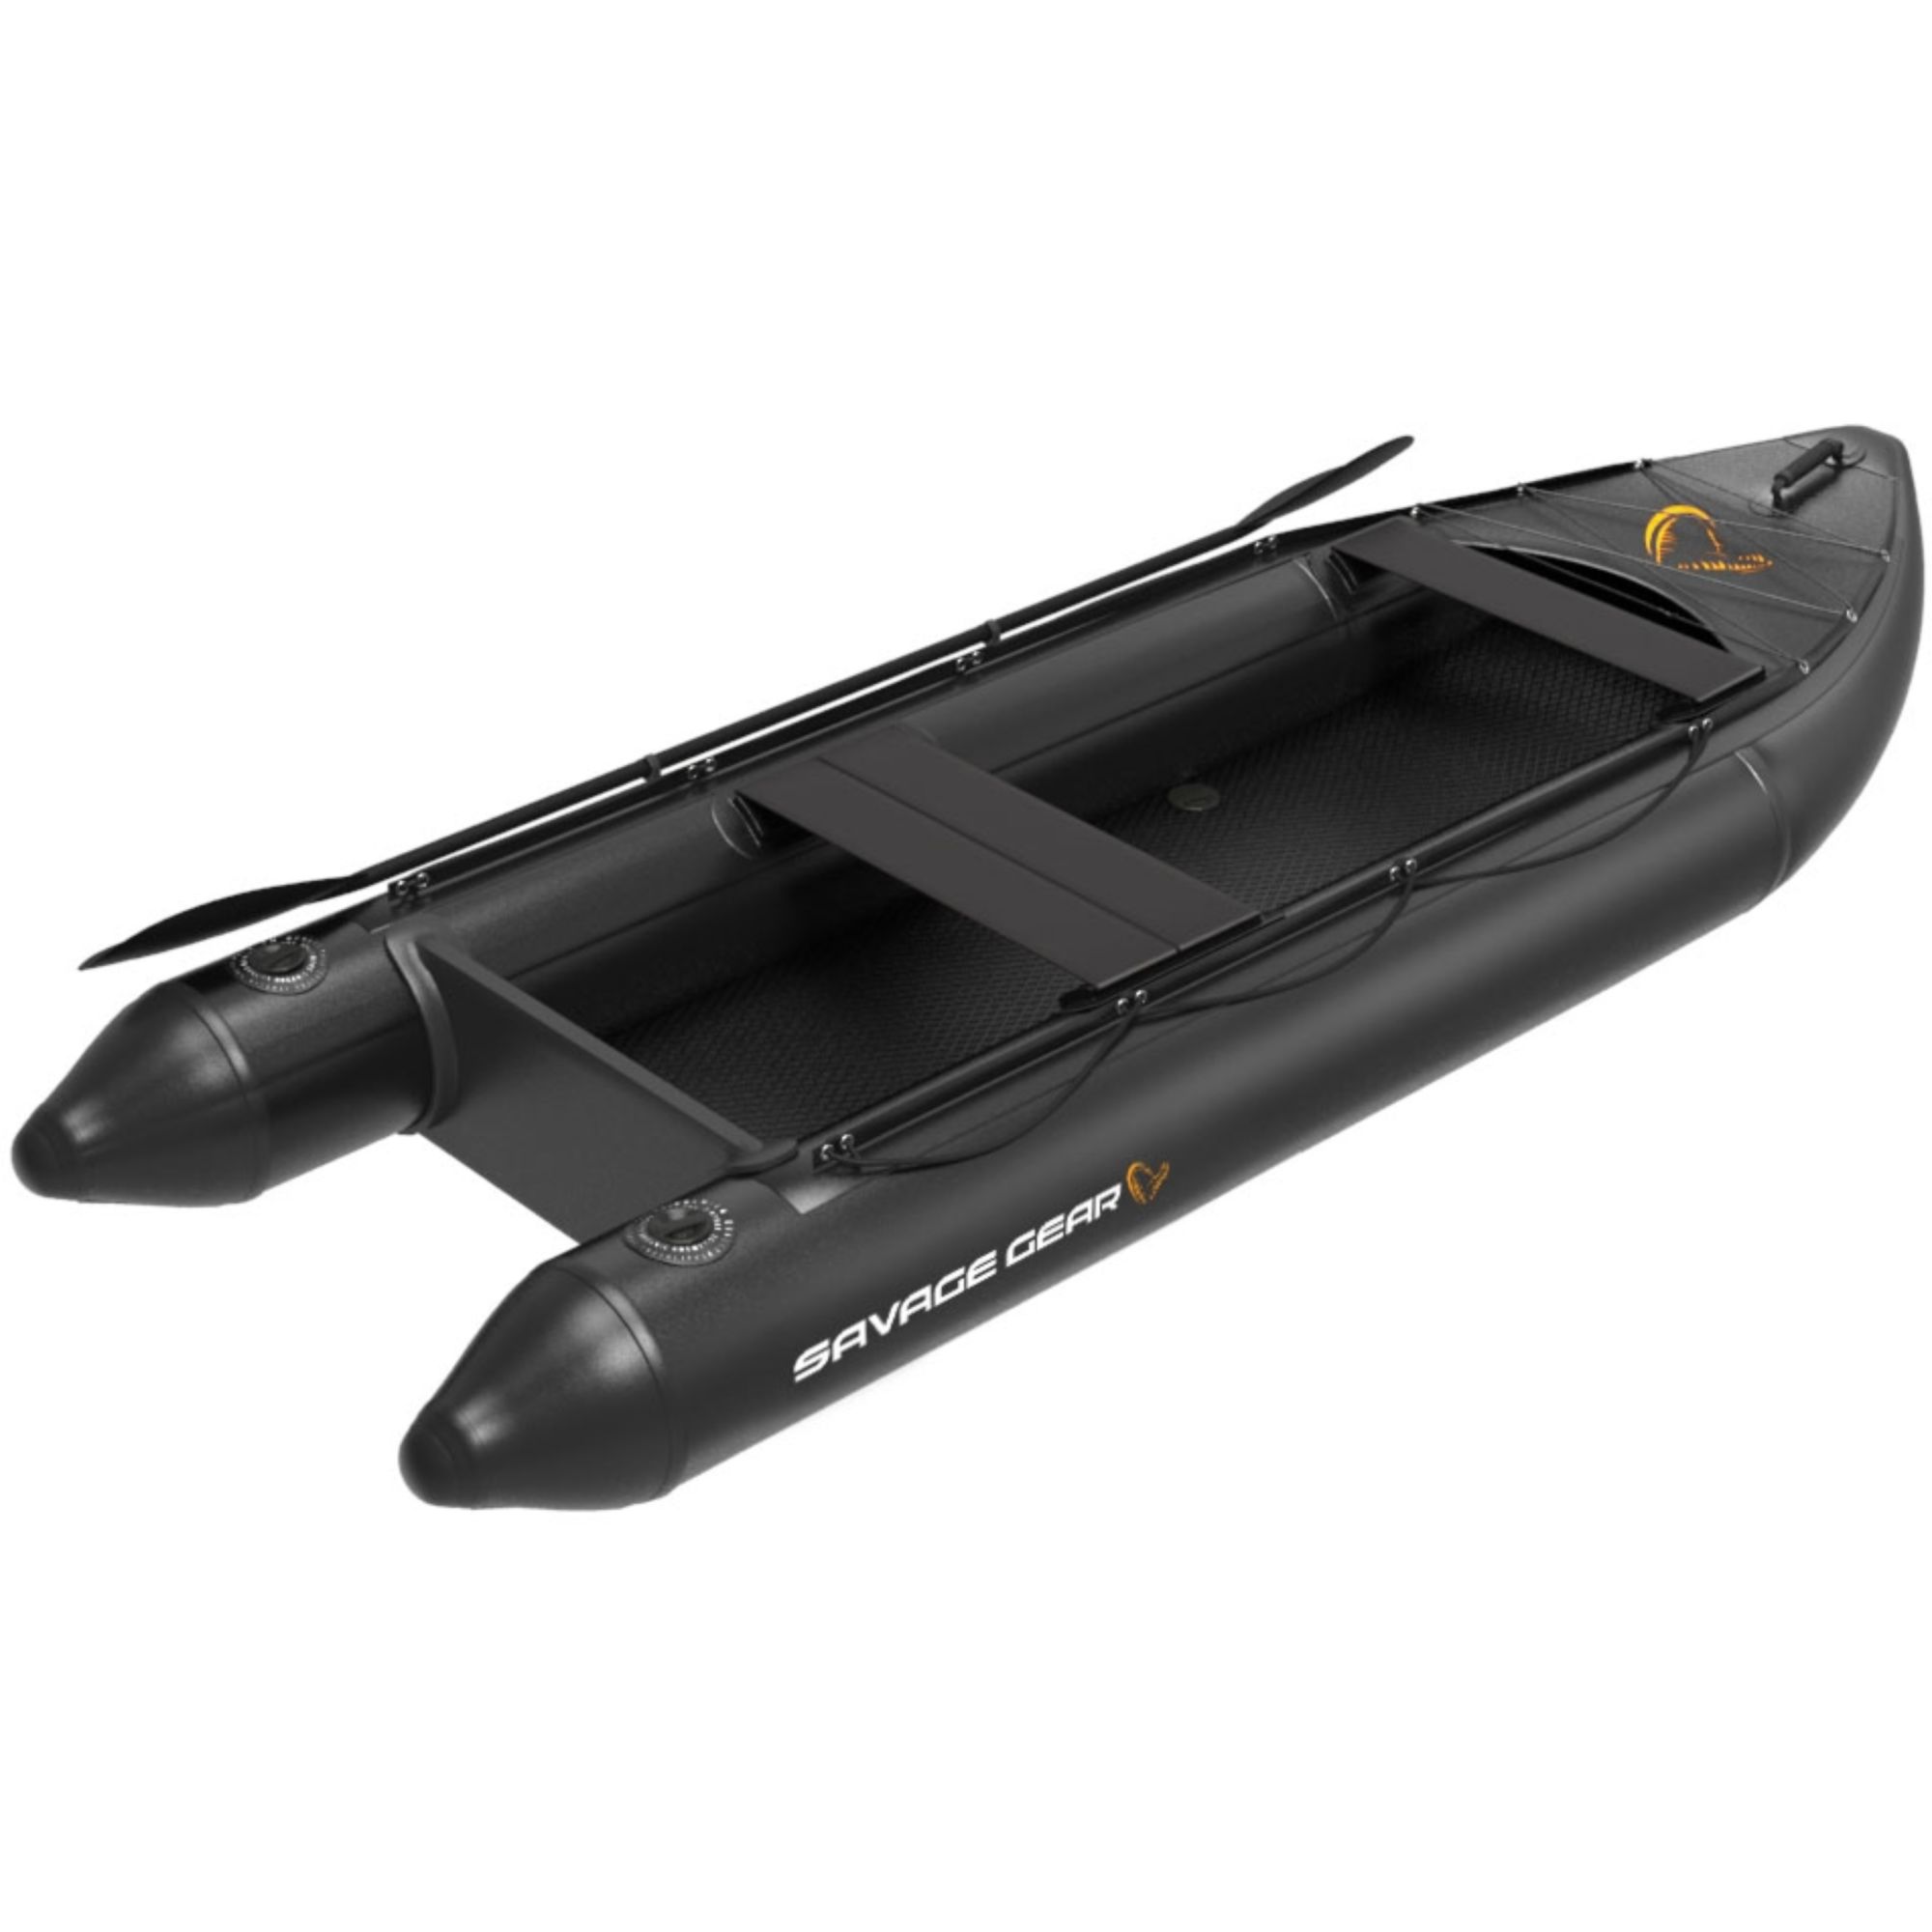 Savagear E-Rider Kayak 330-110cm